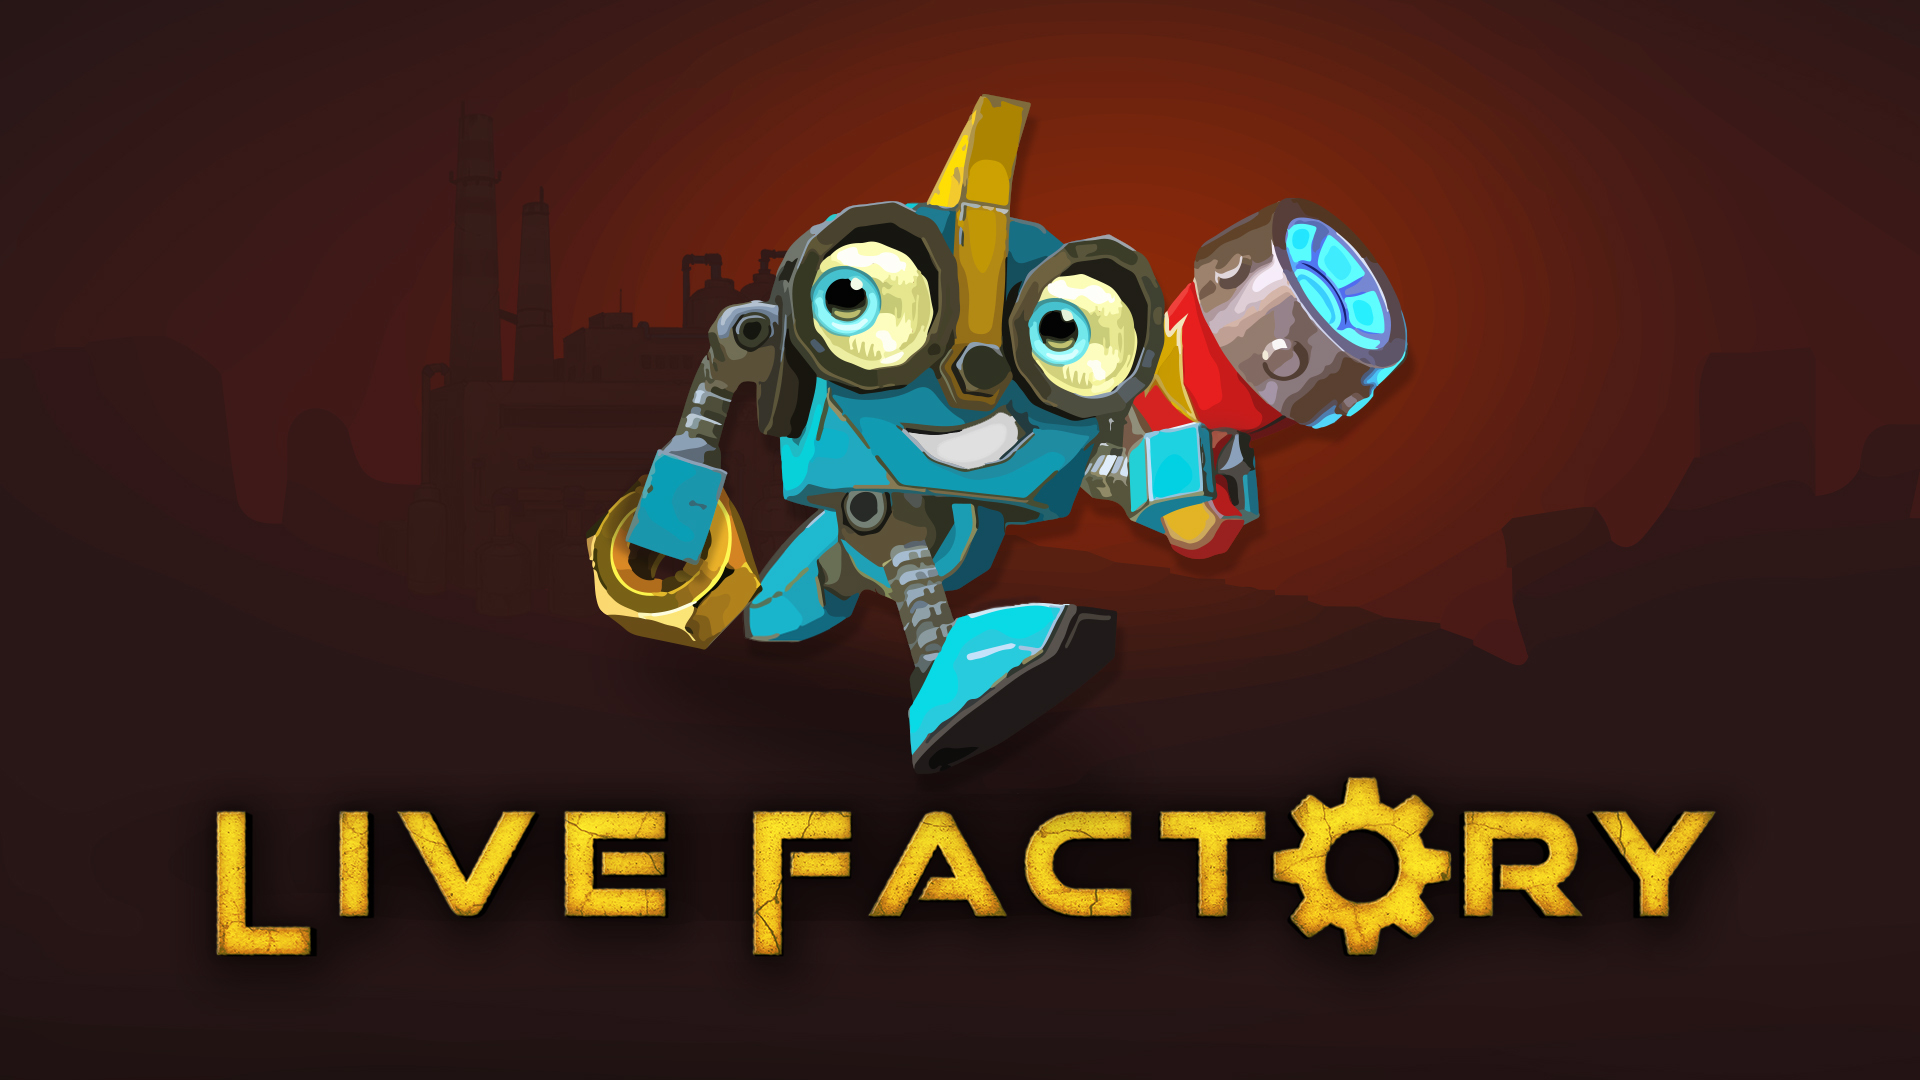 Live Factory - Metacritic